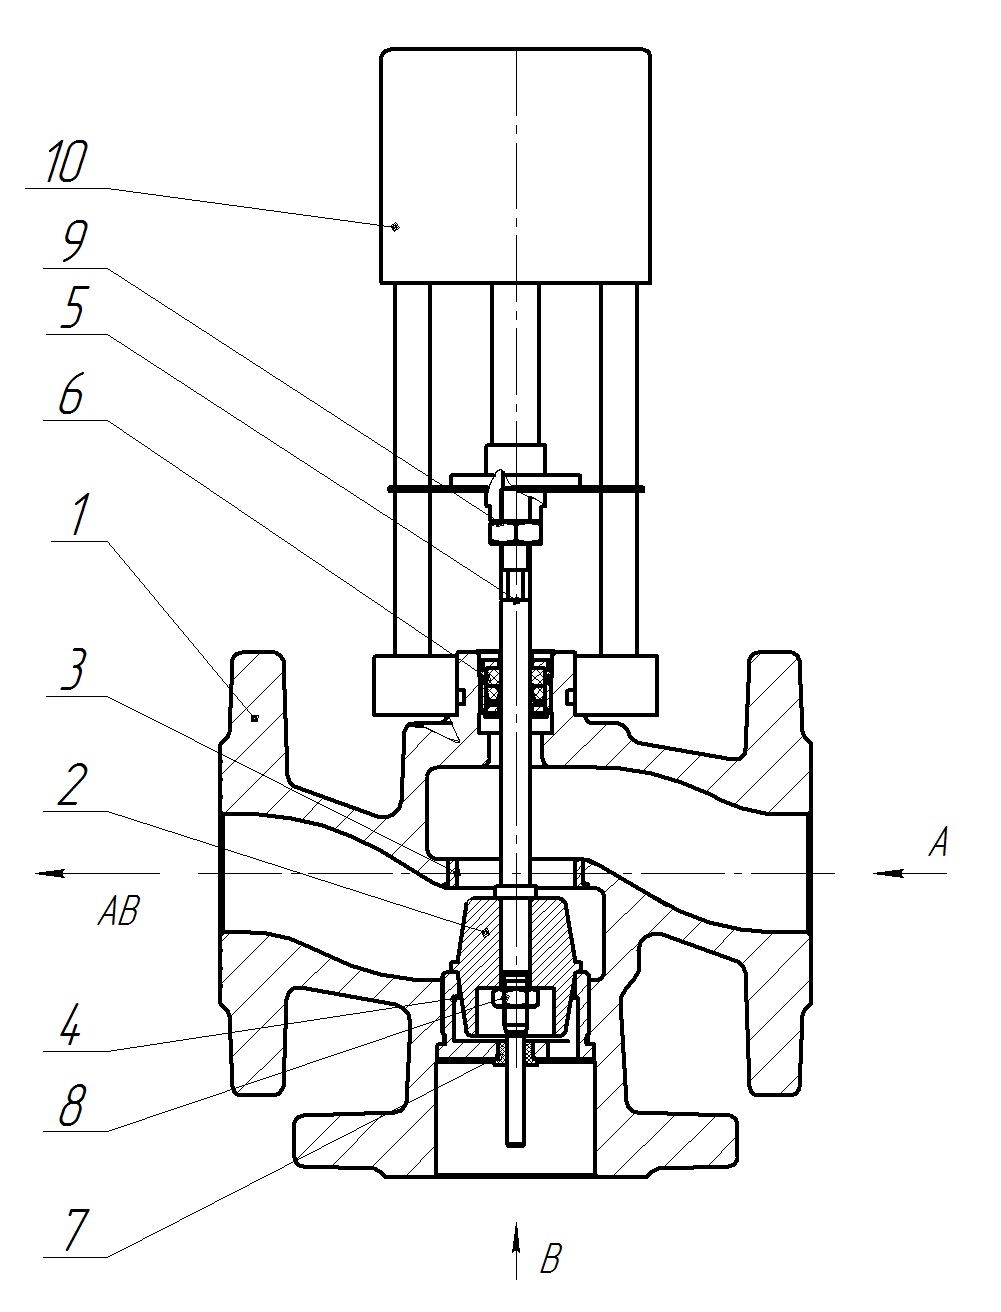 Клапан регулирующий трехходовой разделительный DN.ru 23ч901нж Ду32 Ру16 Kvs6,3 серый чугун СЧ20, фланцевый, Tmax до 150°С с электроприводом Катрабел TW-500-XD220